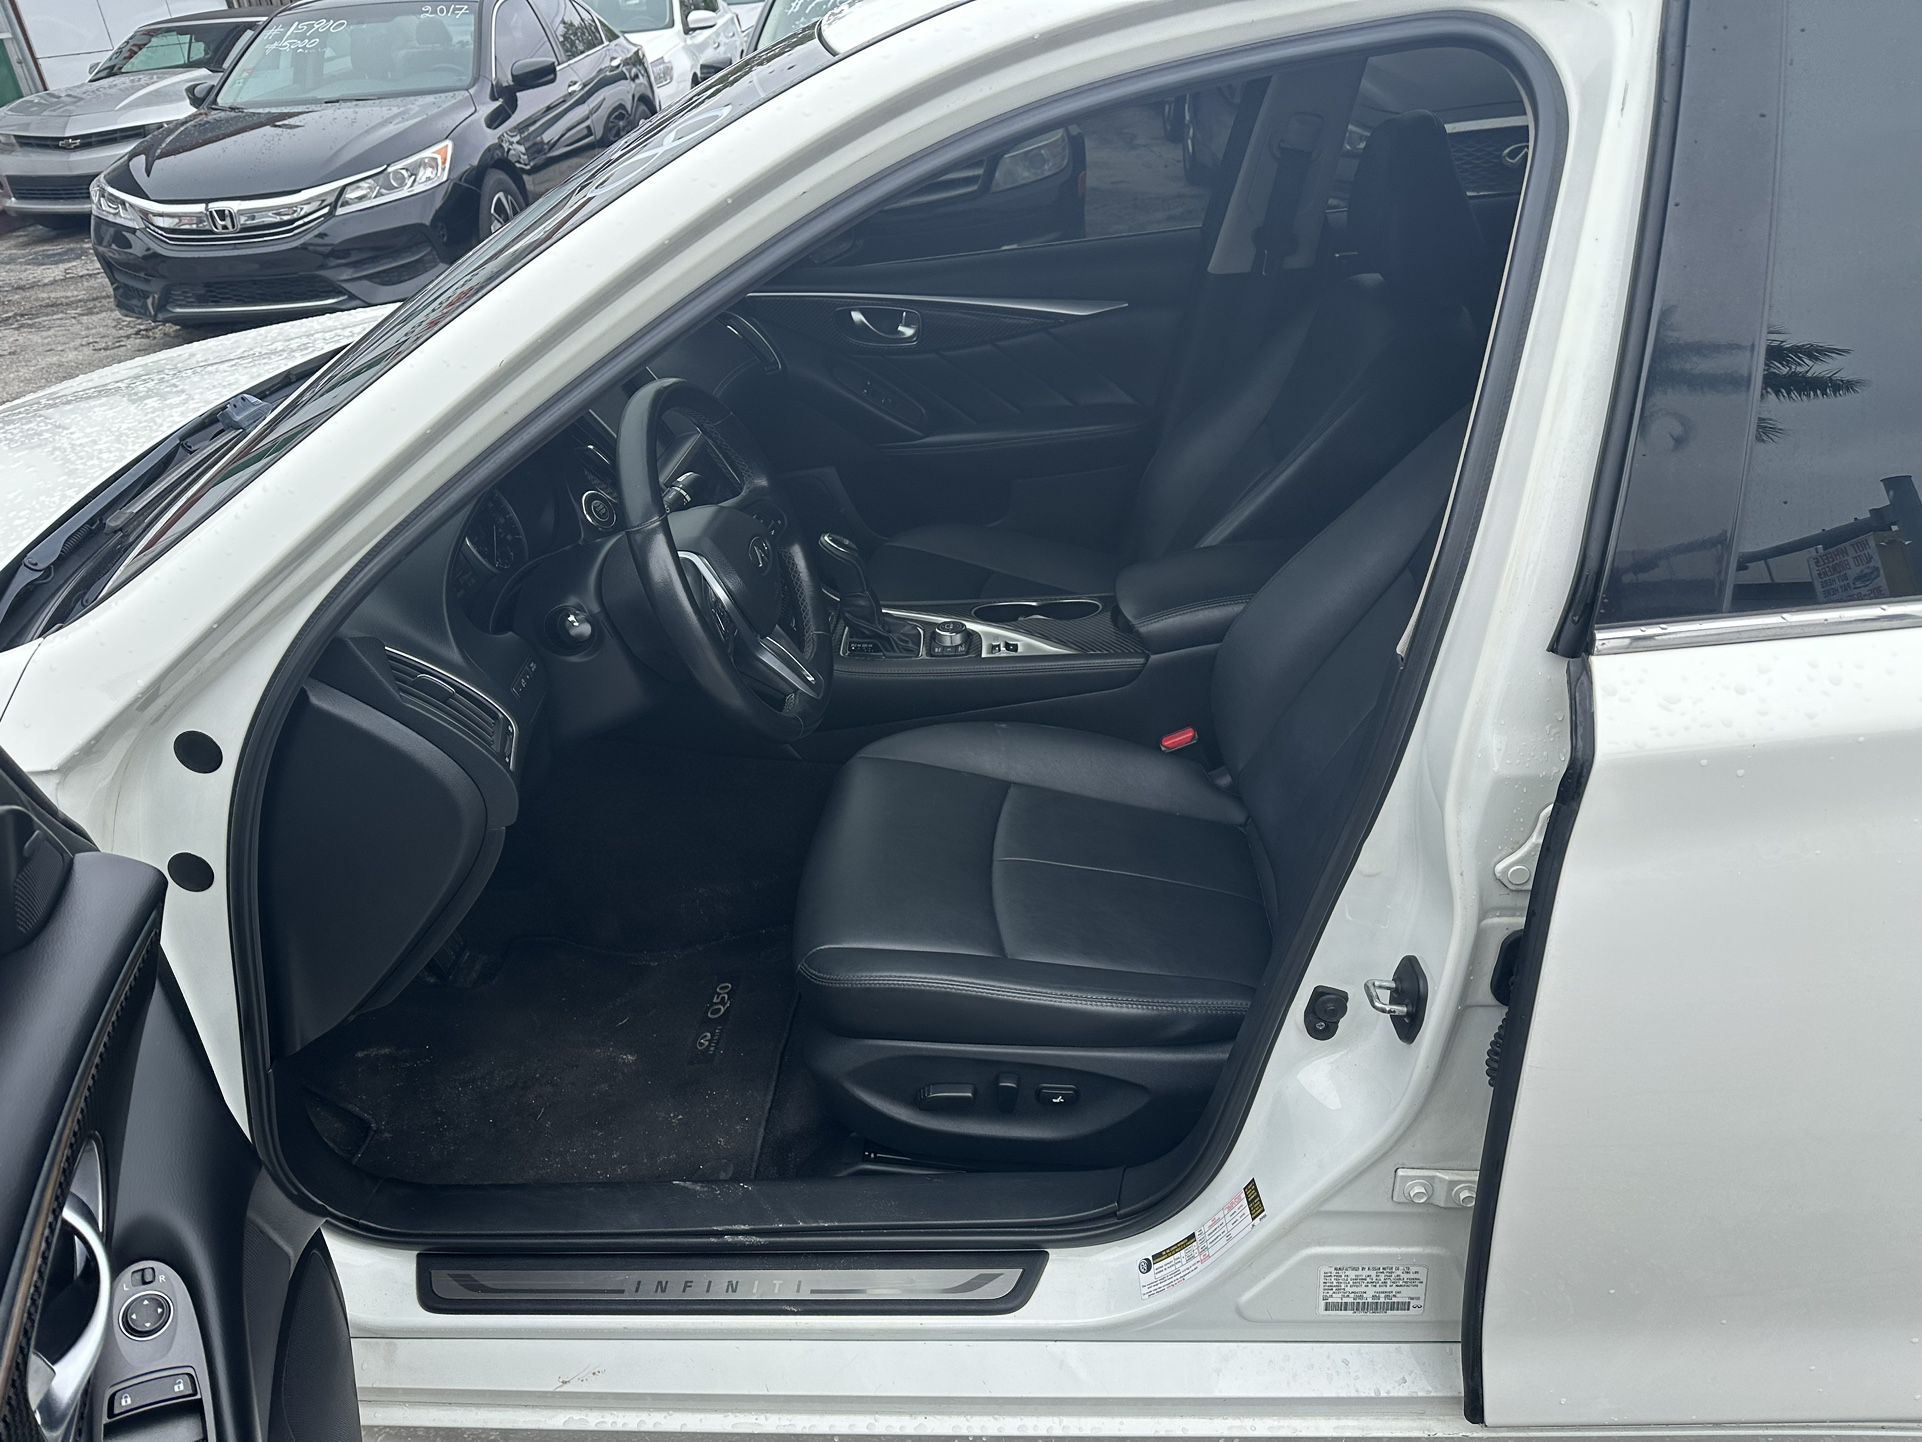 used 2018 INFINITI Q50 - interior view 2